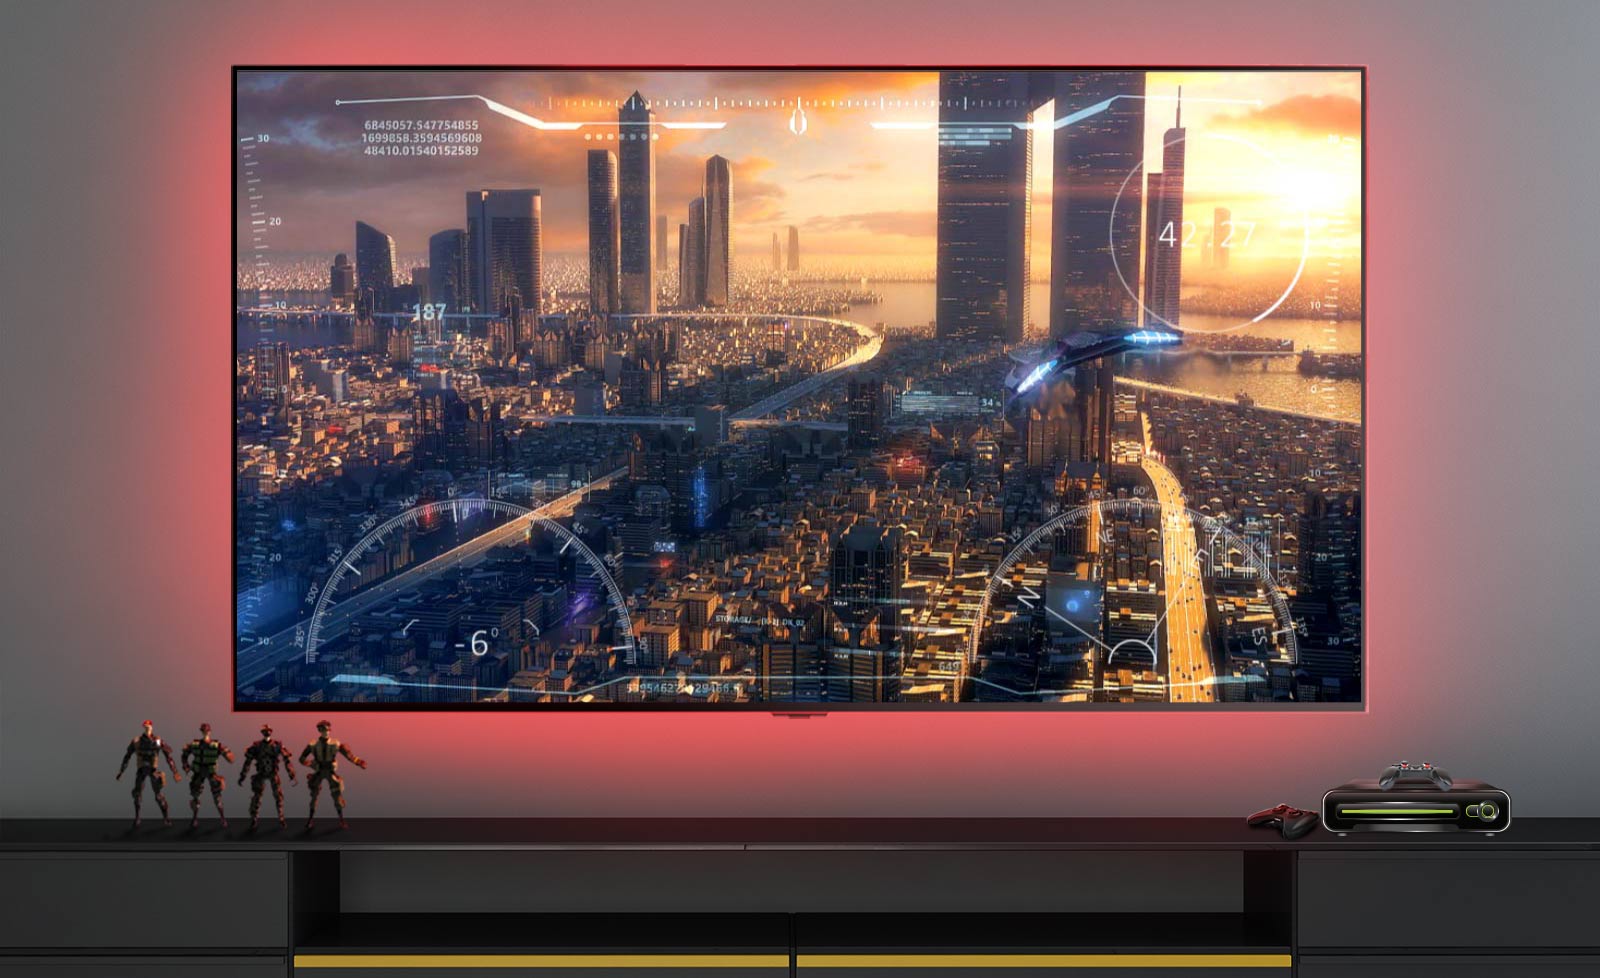 Prizor iz video igre, ki prikazuje vesoljsko ladjo, ki leti na mesto na TV zaslonu (predvaja video).